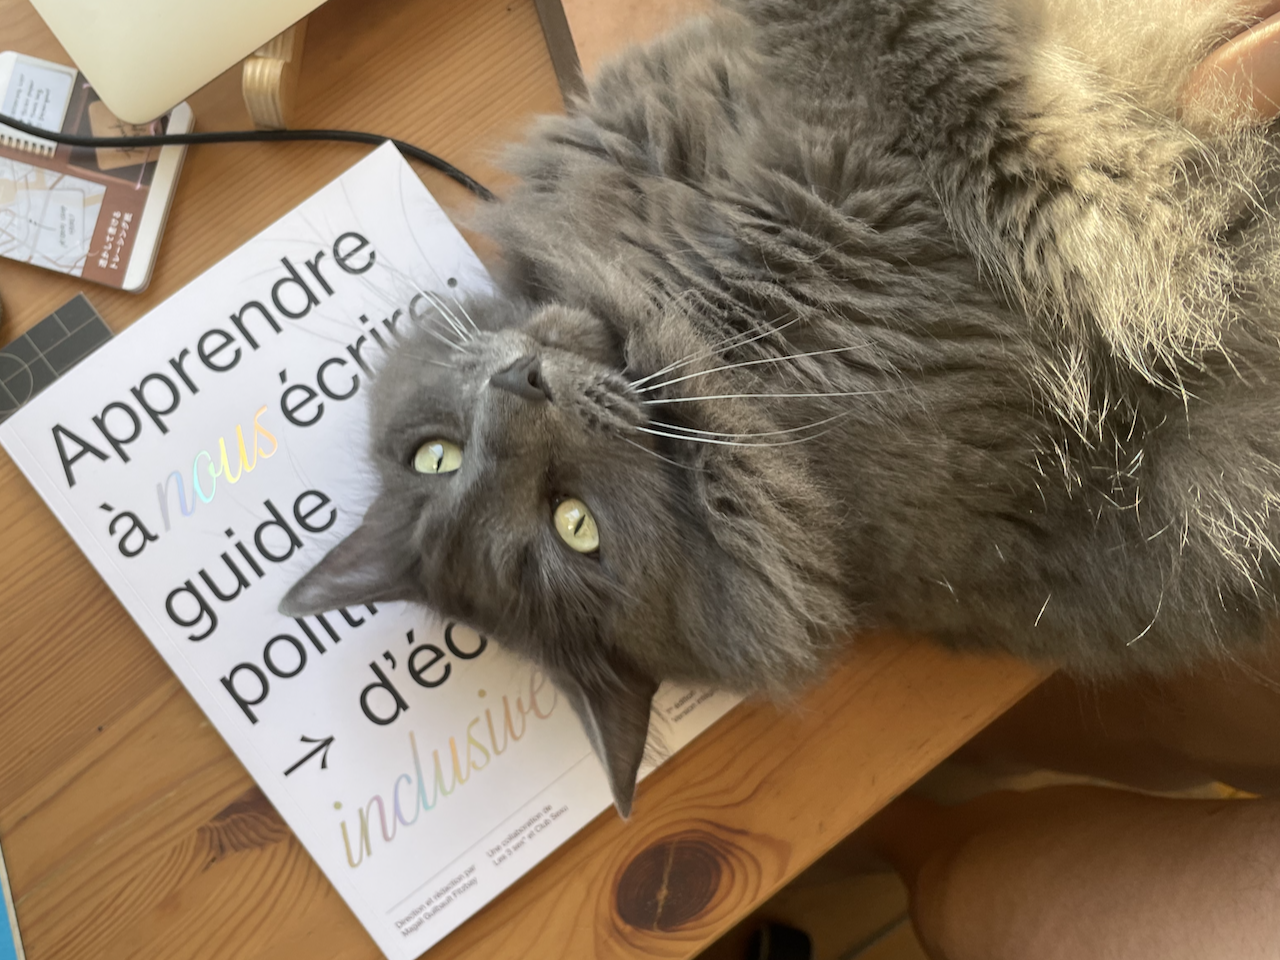 Une photo de la couverture du livre Apprendre à nous écrire, mais avec un gros chat gris qui longe dessus.